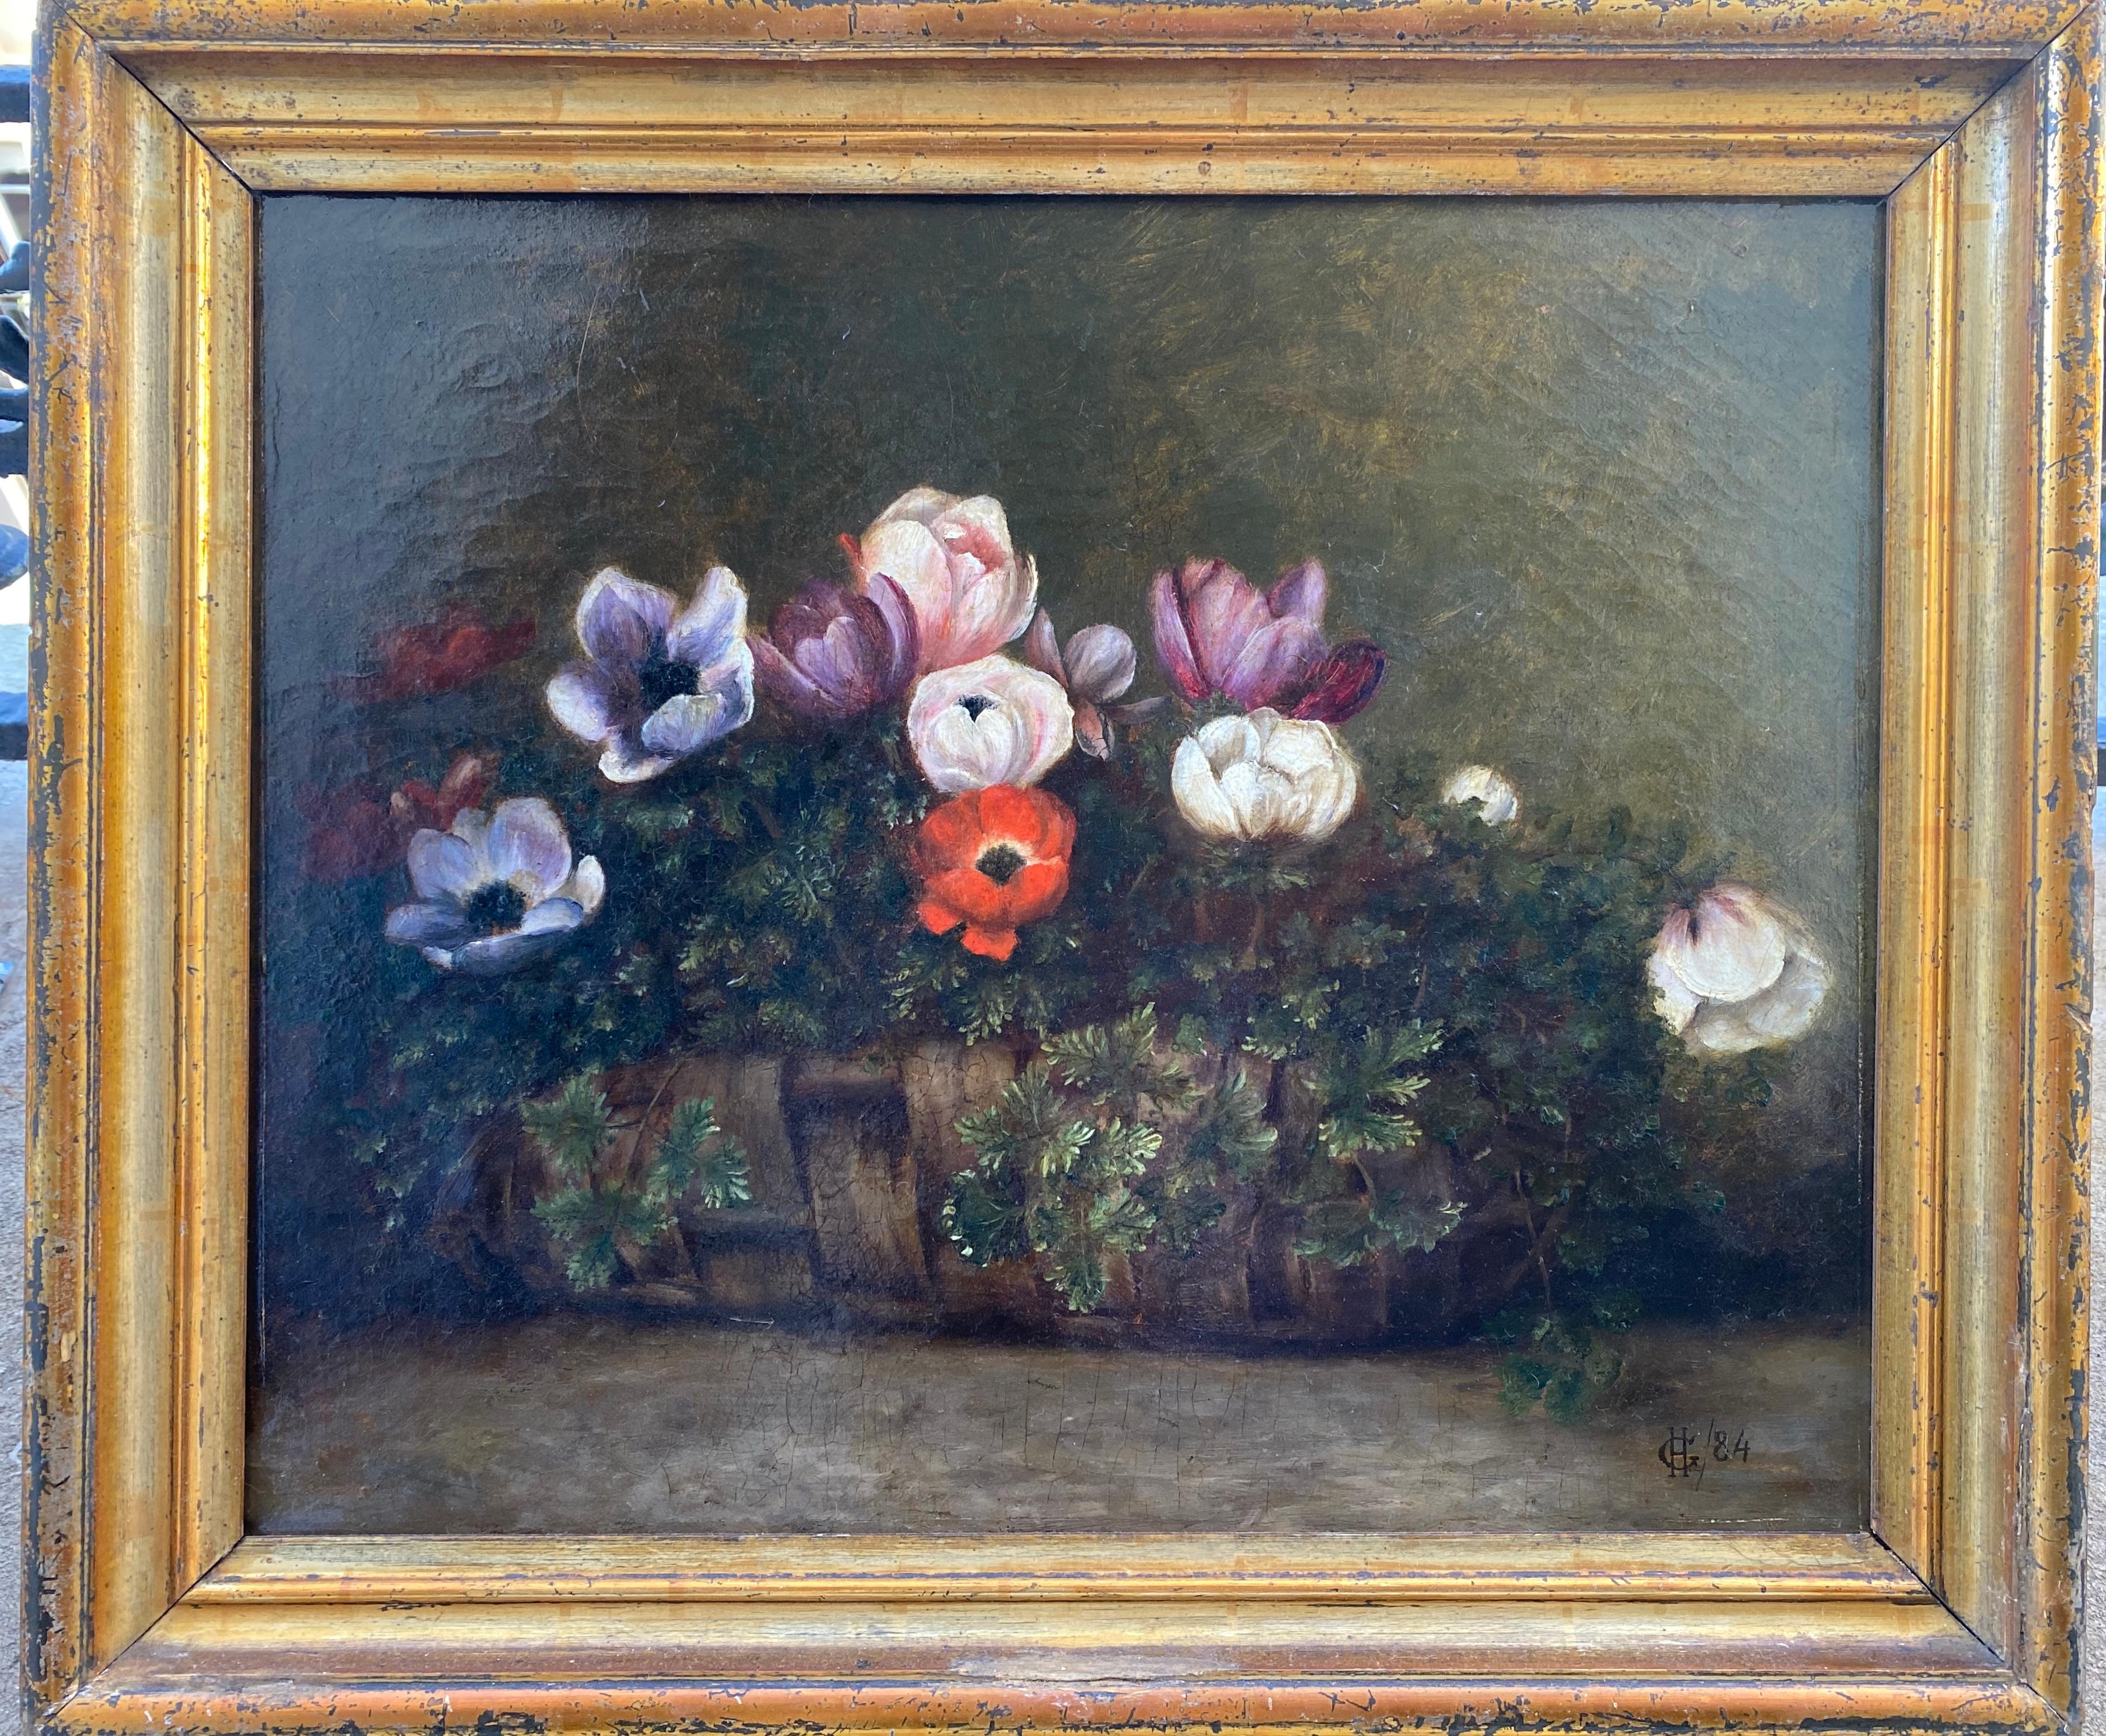 Korb aus Korbweide mit Anhängern, ein bescheidenes Festliches Geschenk, Blumenstillleben aus dem 19. Jahrhundert (Französische Schule), Painting, von Unknown